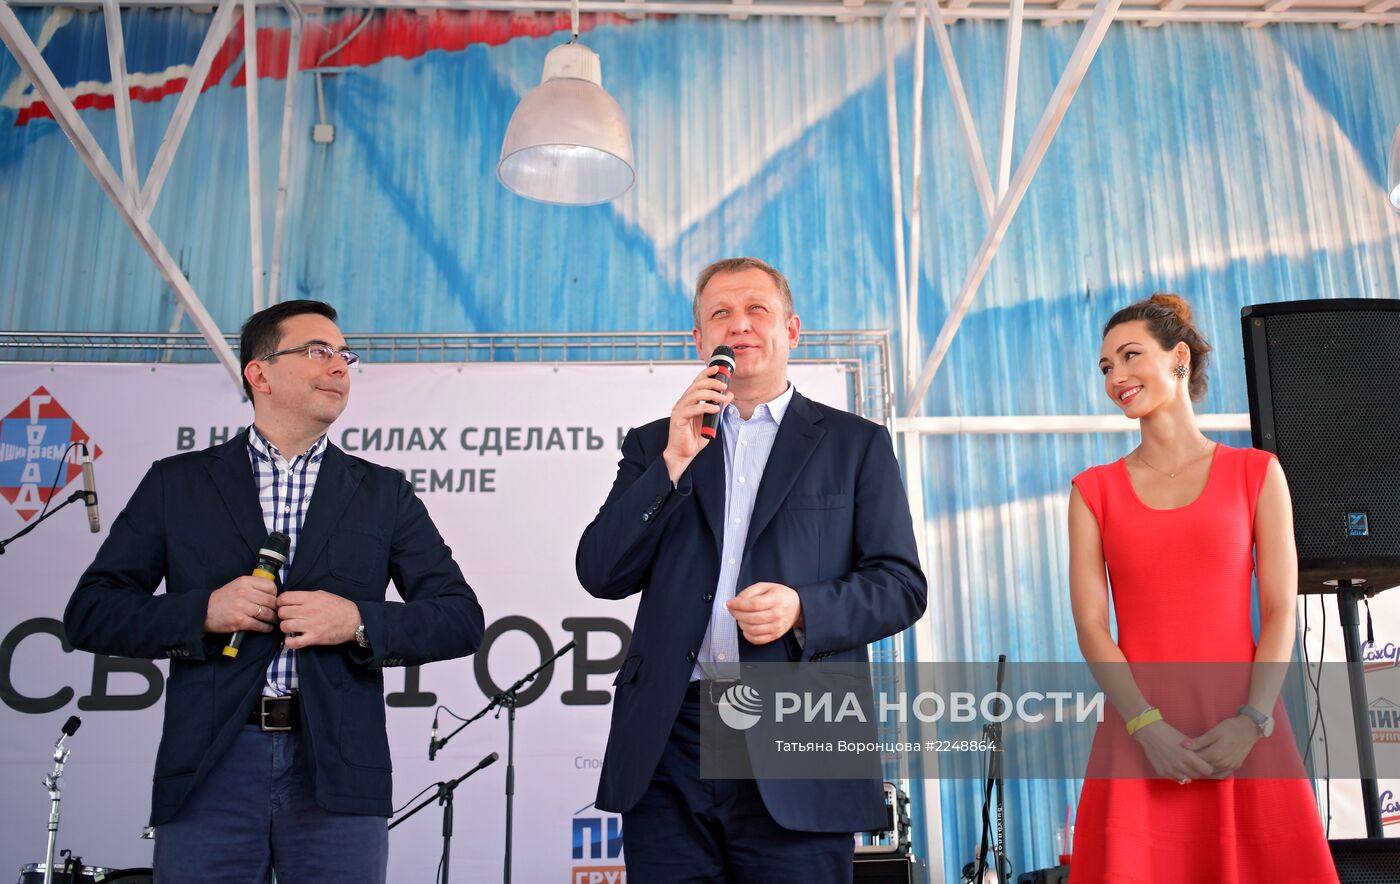 Открытие площадки "САХАрт" в Москве